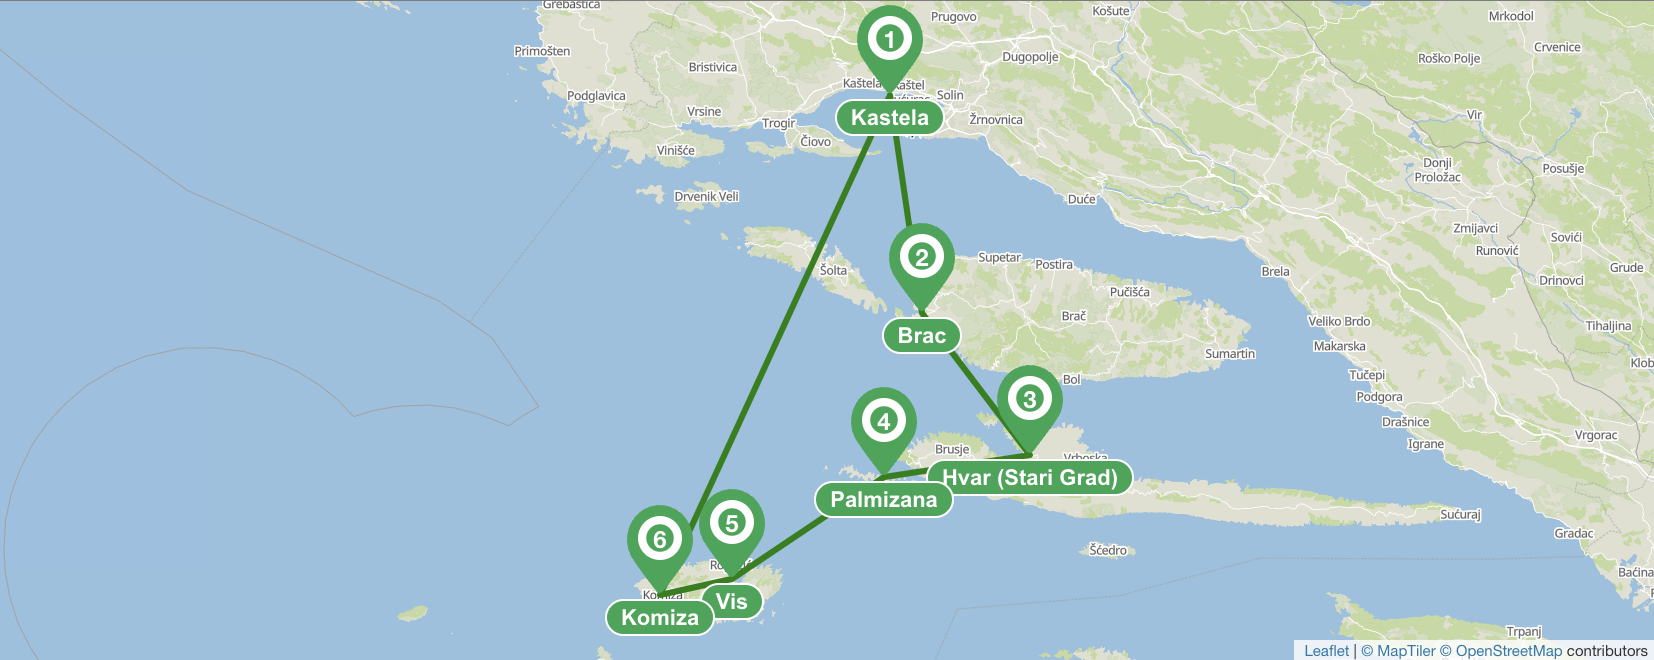 Itinéraire Split sud à la voile - 7 jours